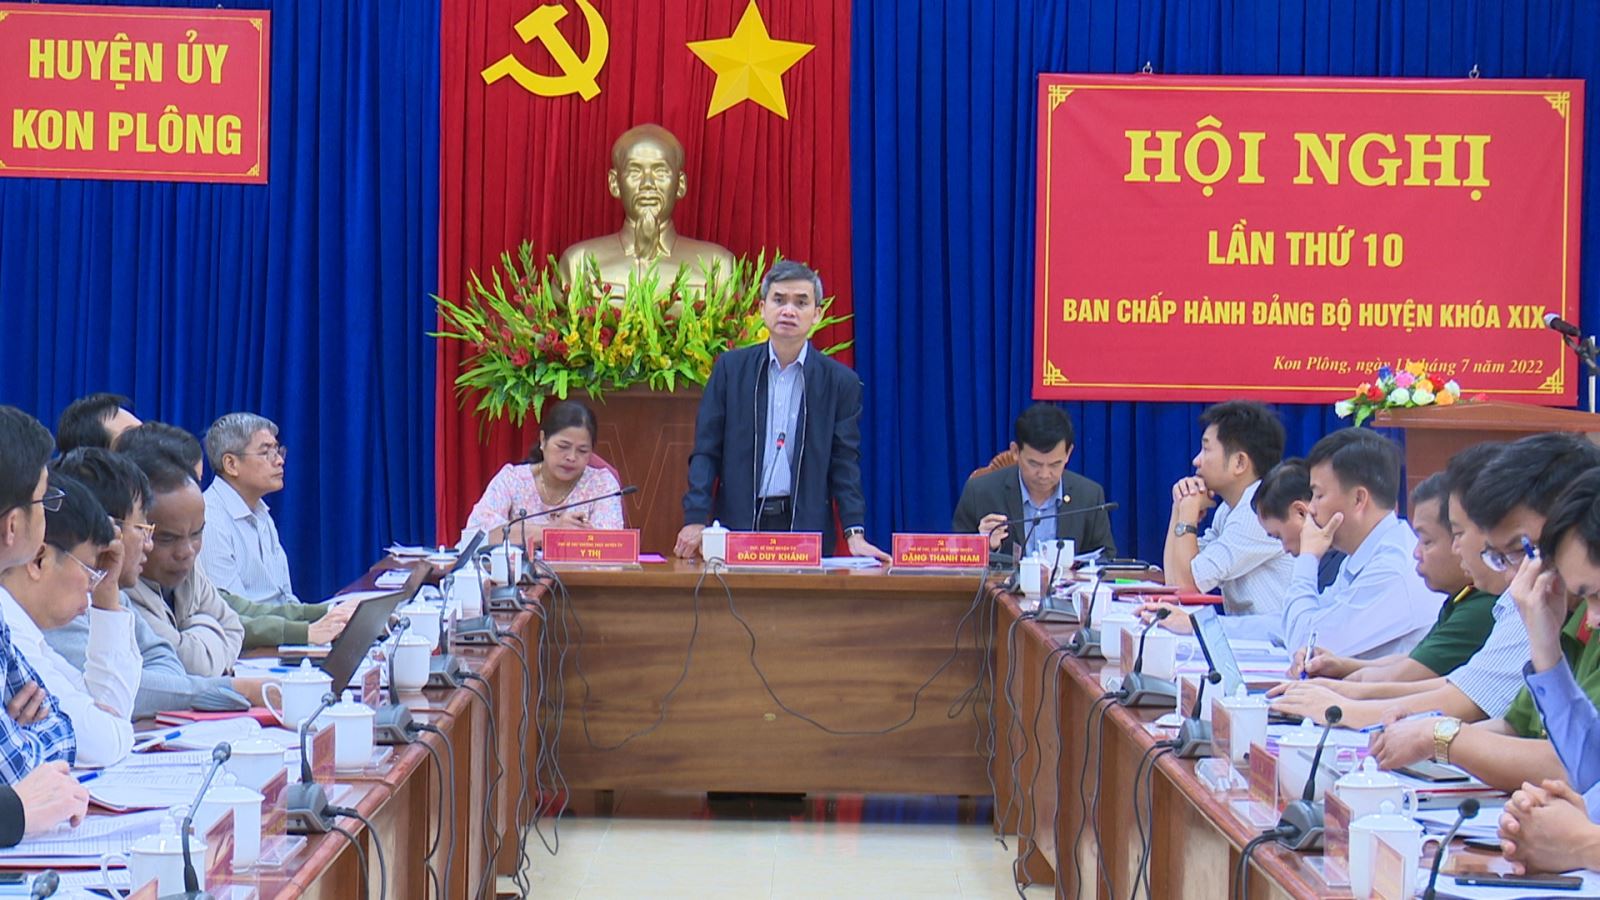 Ban Chấp hành Đảng bộ huyện Kon Plông khóa XIX  tổ chức Hội nghị lần thứ 10